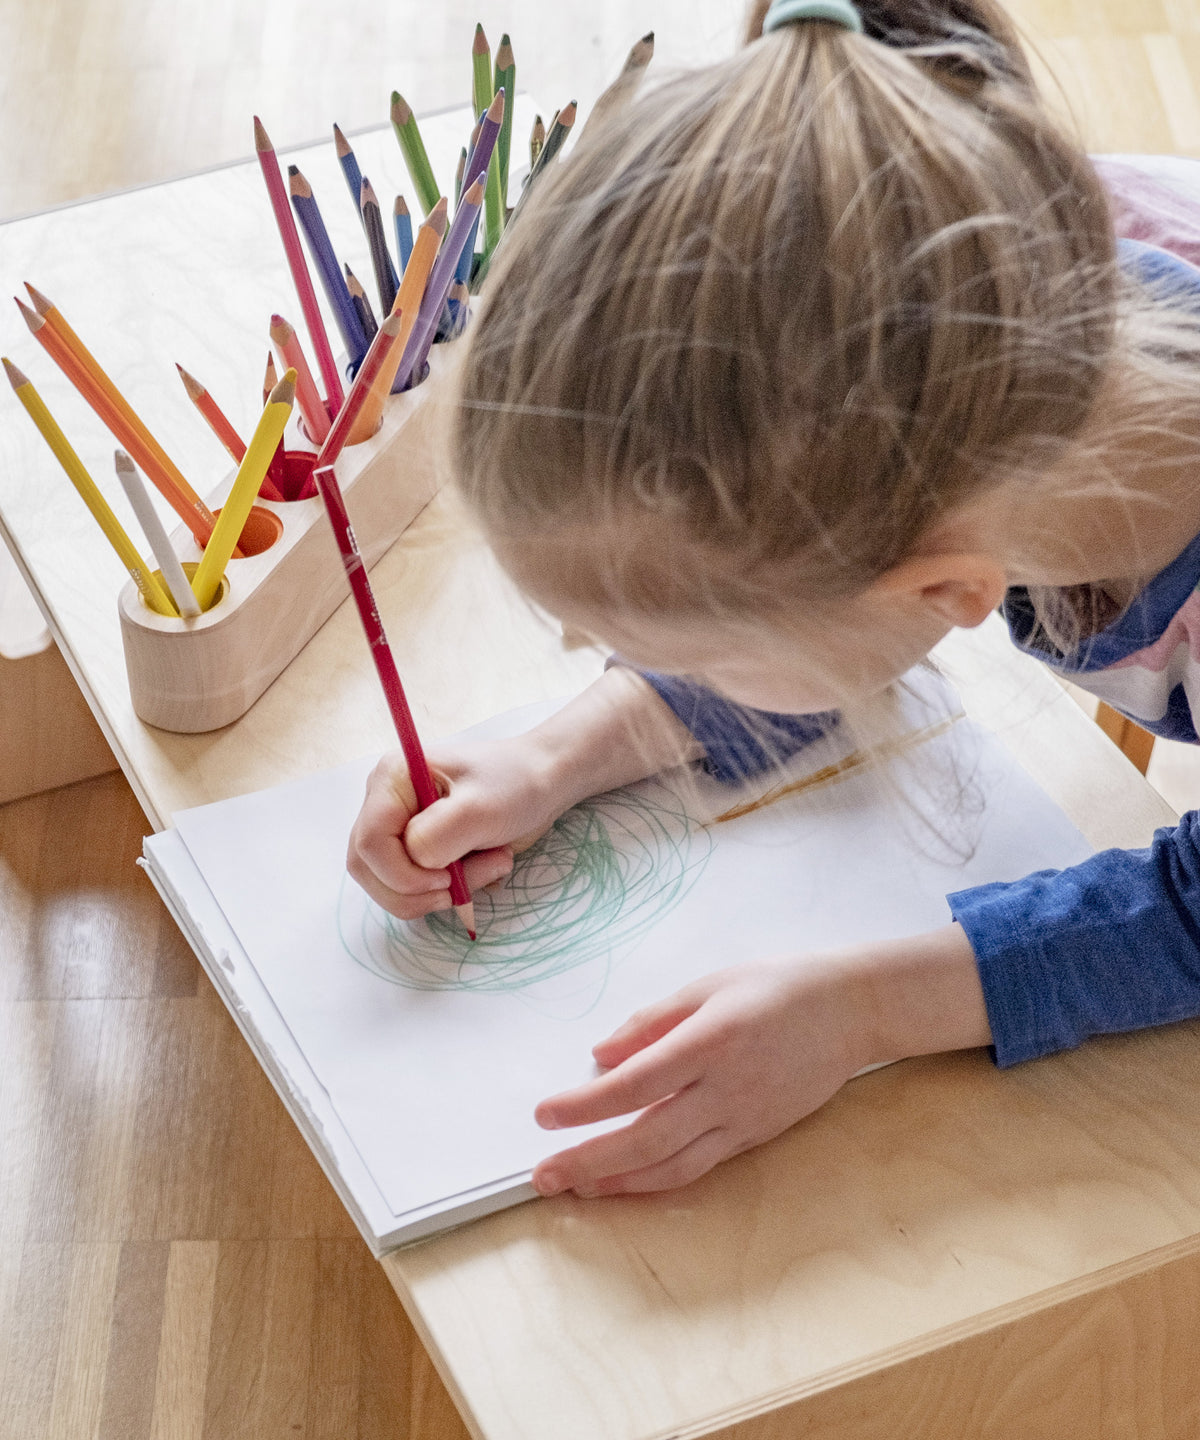 Kind malt ein Bild, daneben steht Stiftehalter.